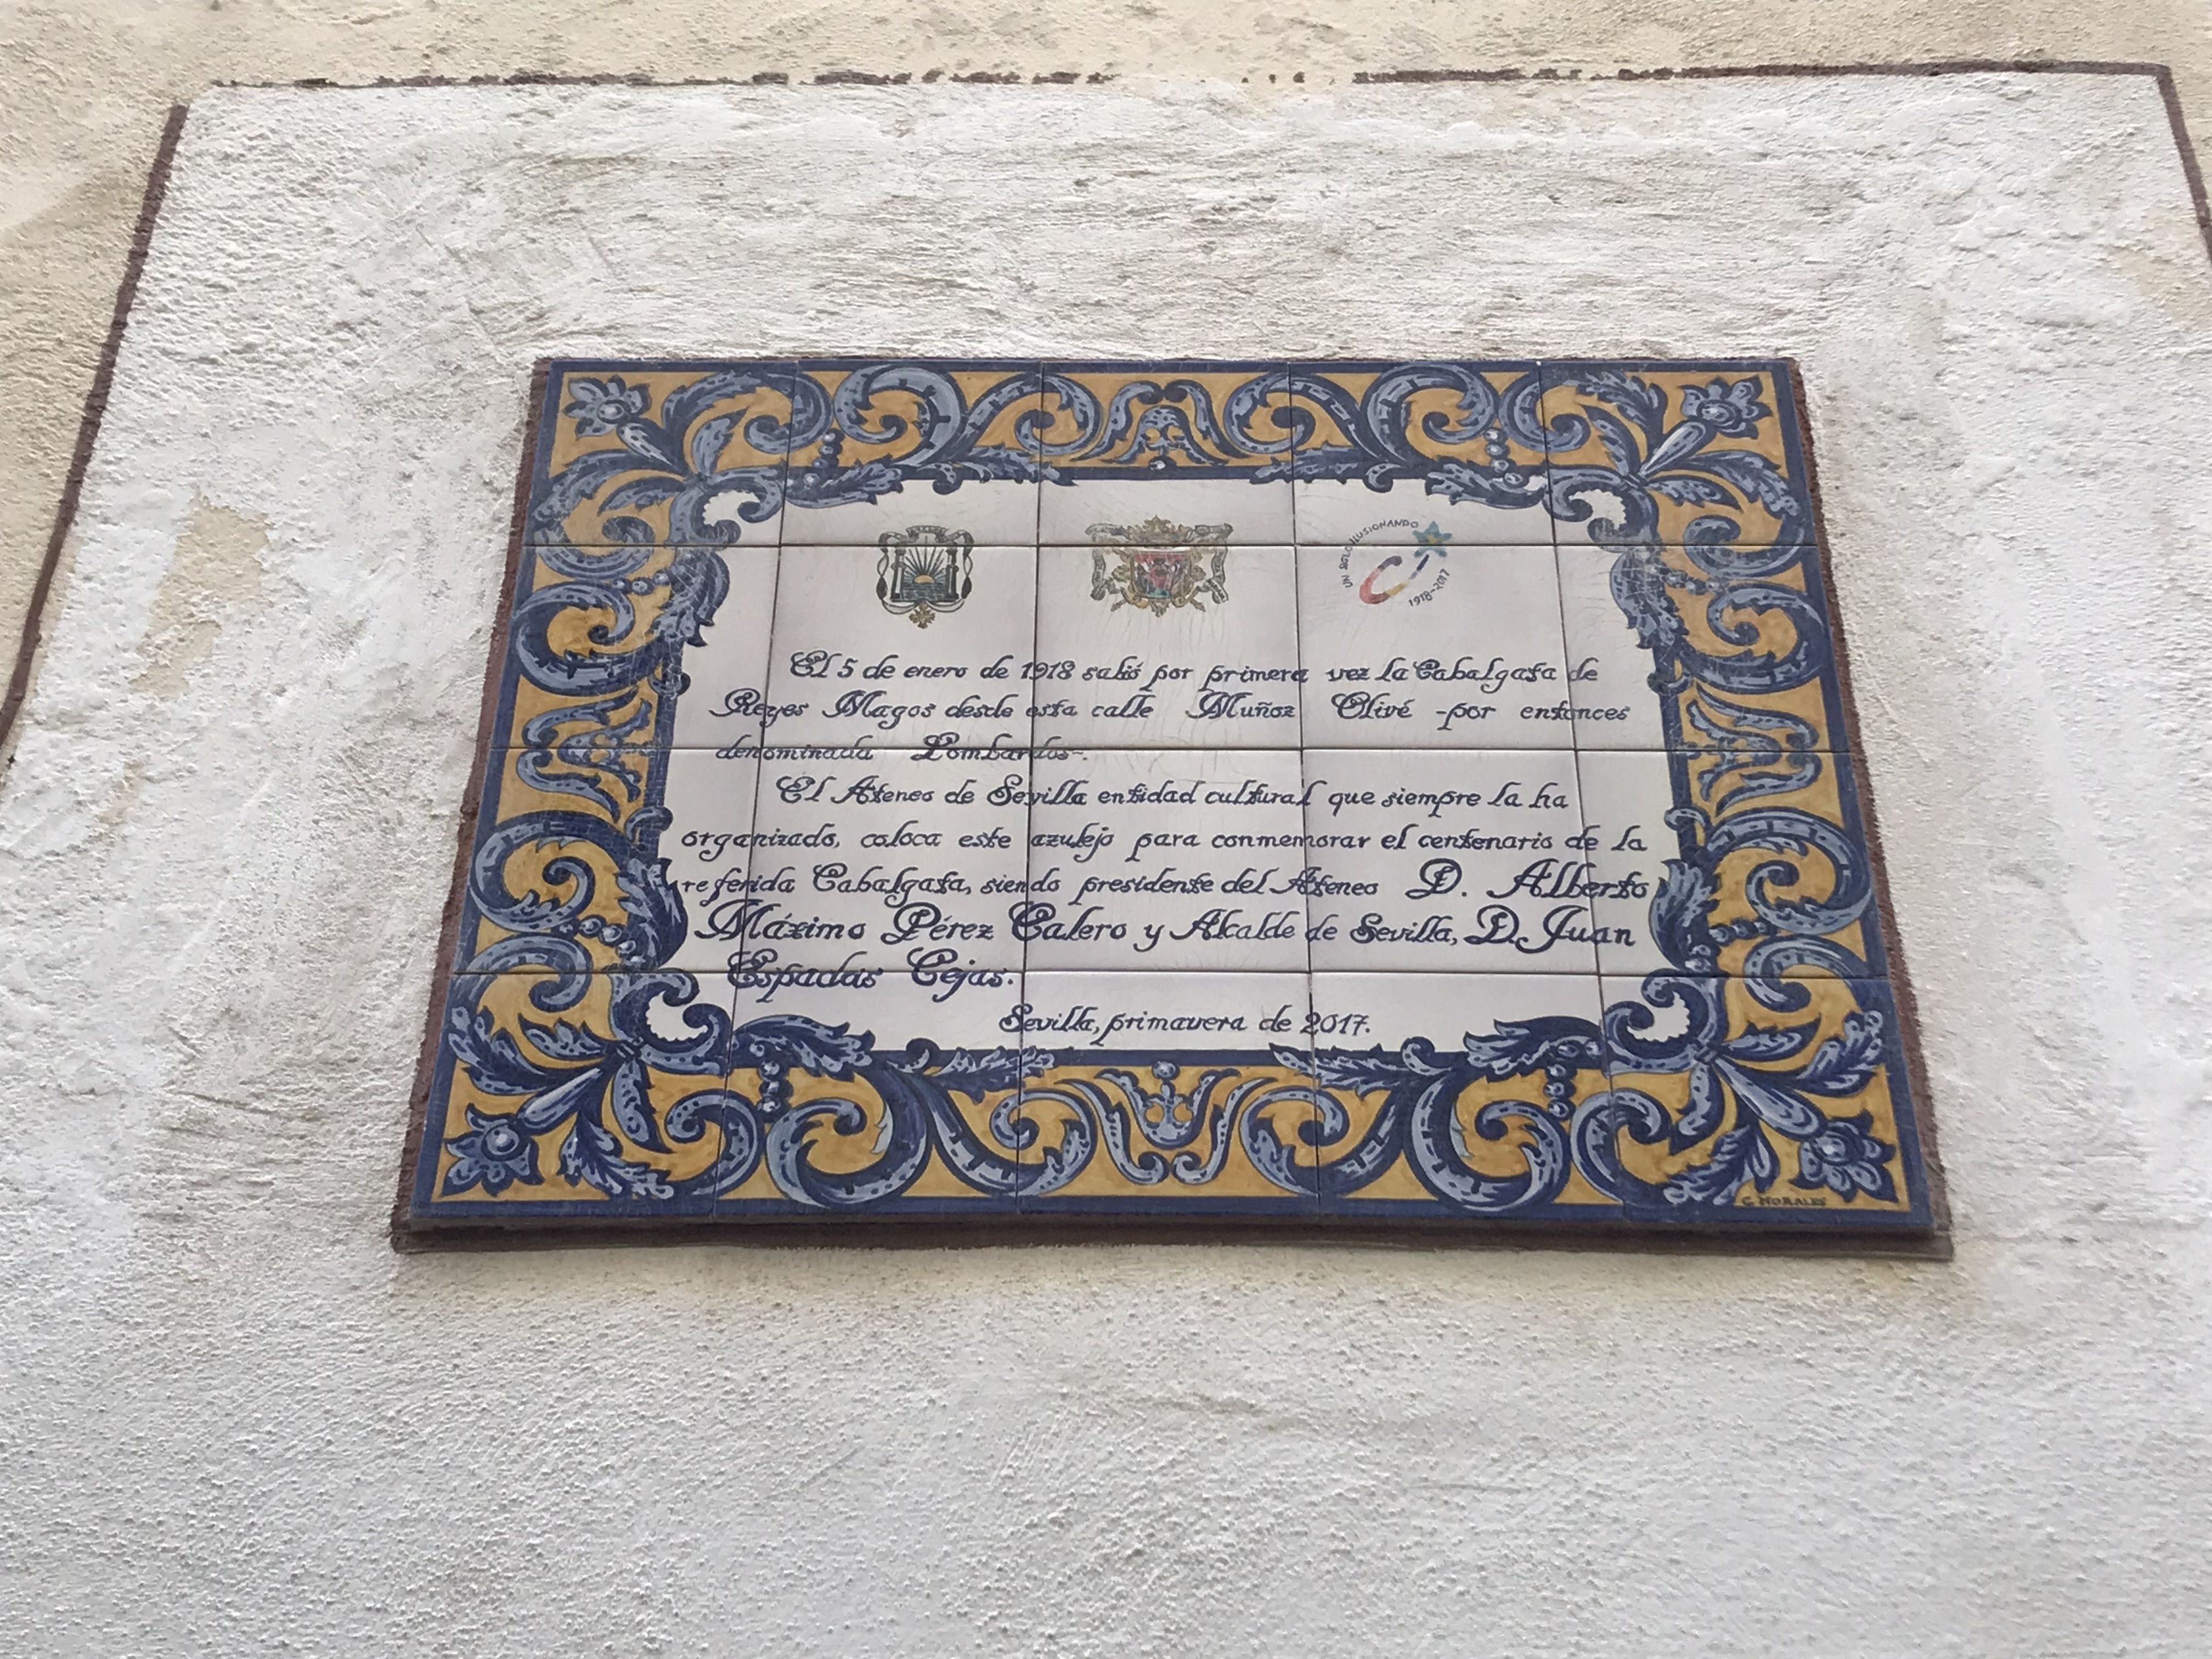 Una escondida placa recuerda el origen de la Cabalgata de Reyes Magos de Sevilla, que hoy cumple 104 años.